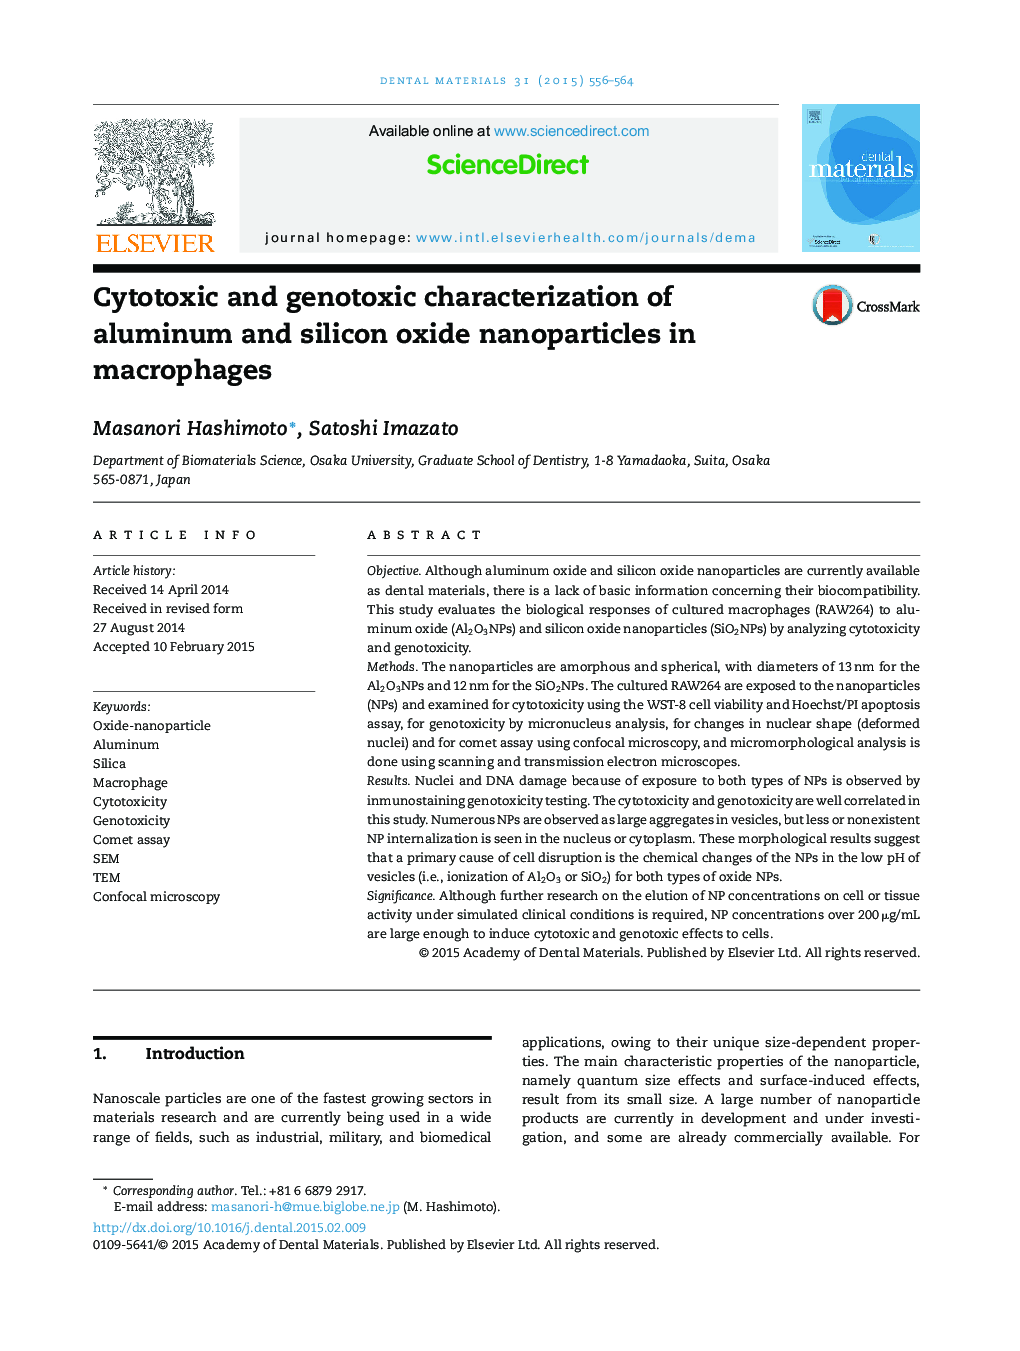 مشخصه های سیتوتوکسیک و ژنوتوسیک نانوذرات اکسید آلومینیوم و سیلیکون در ماکروفاژها 